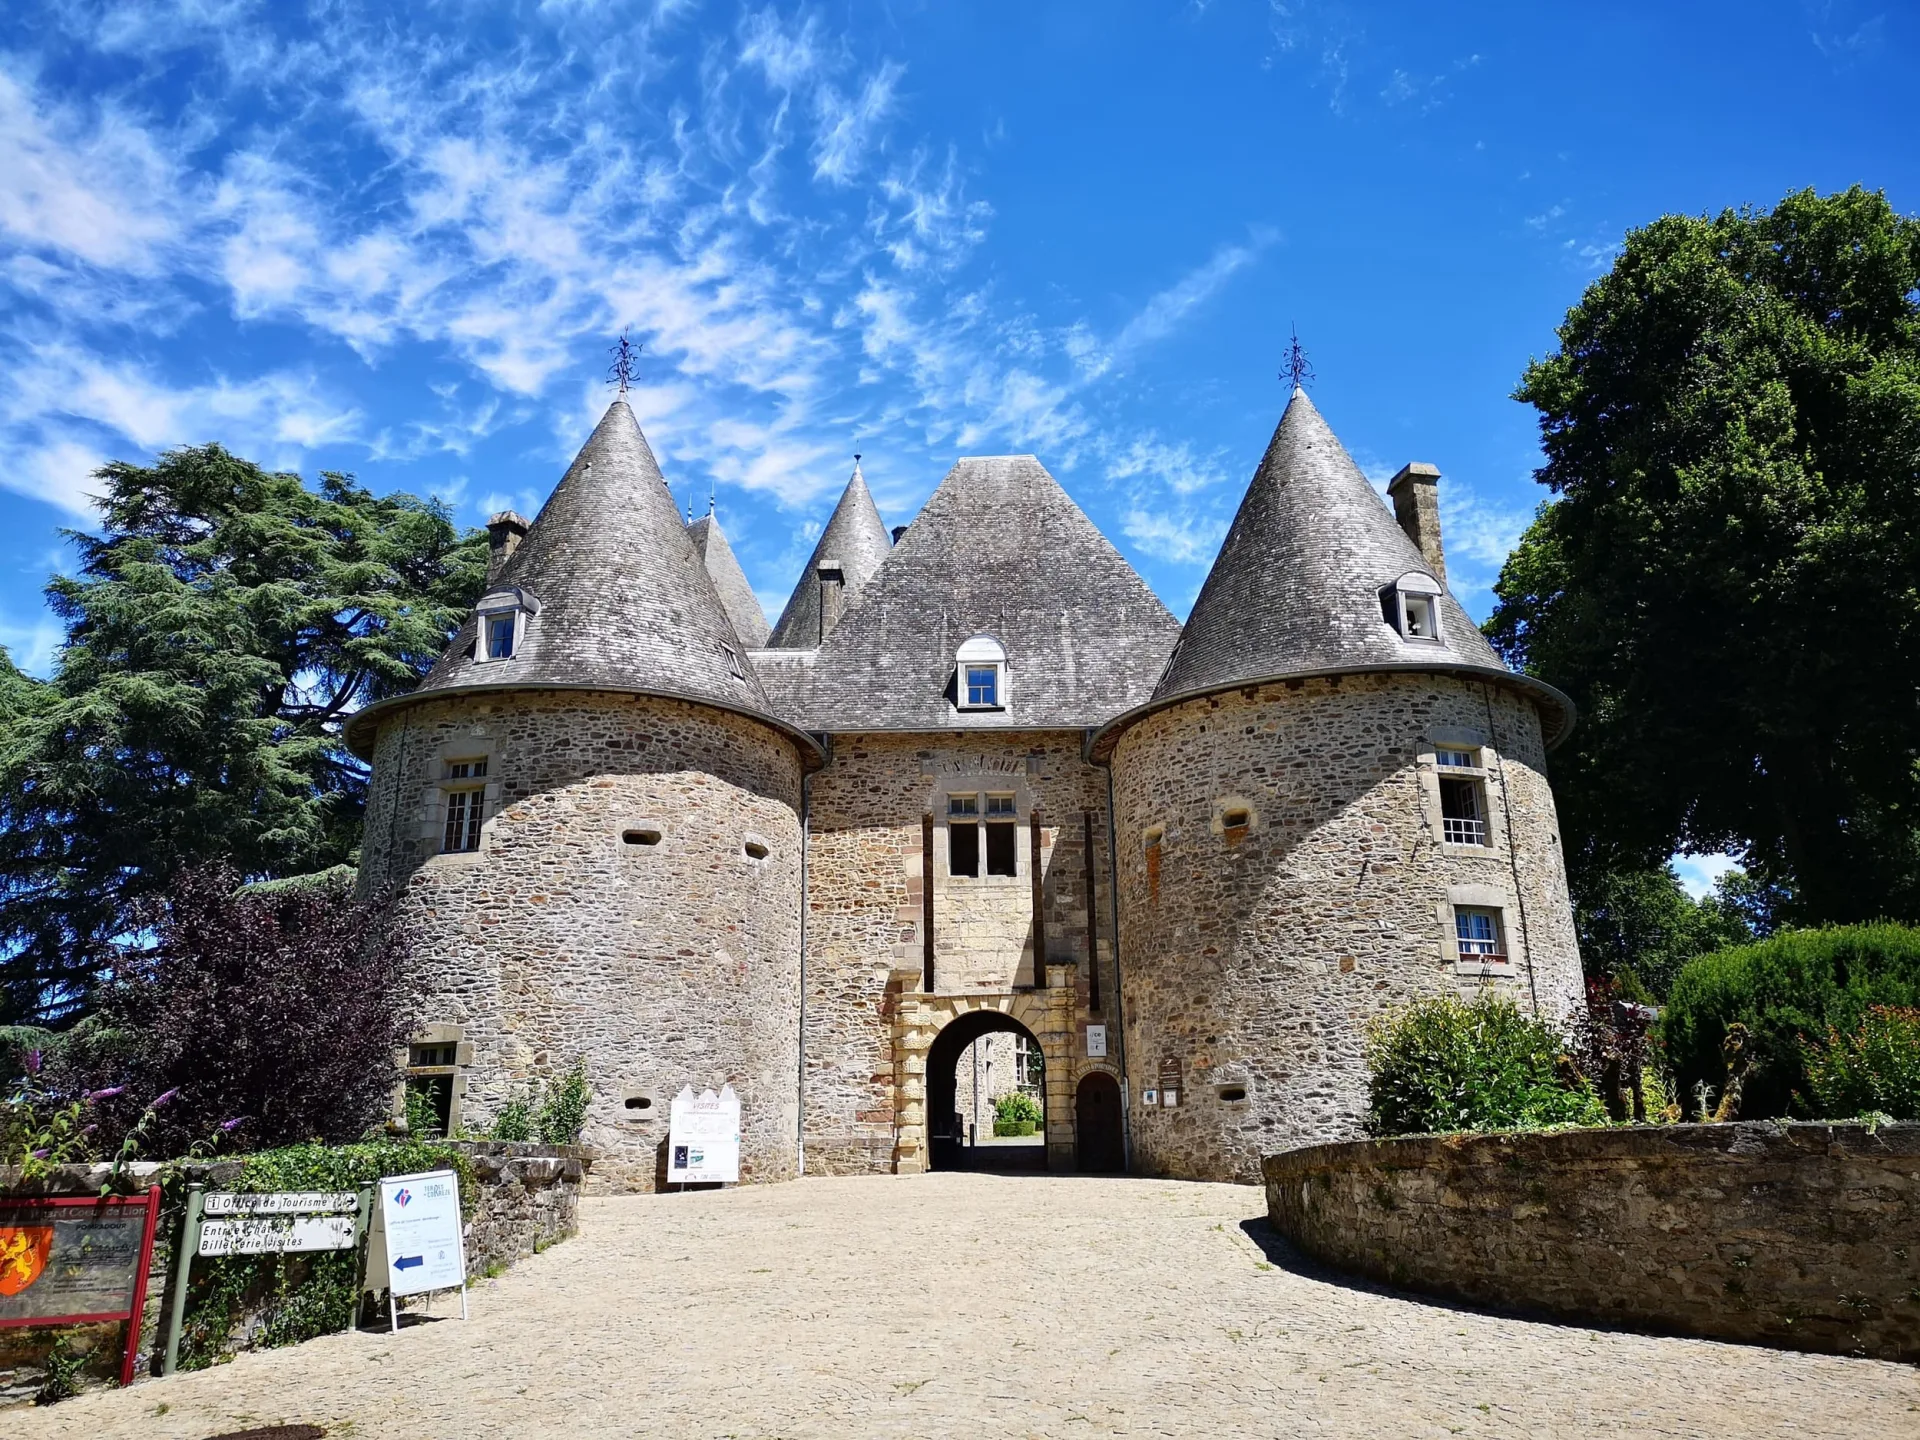 Ingresso dello Château de Pompadour